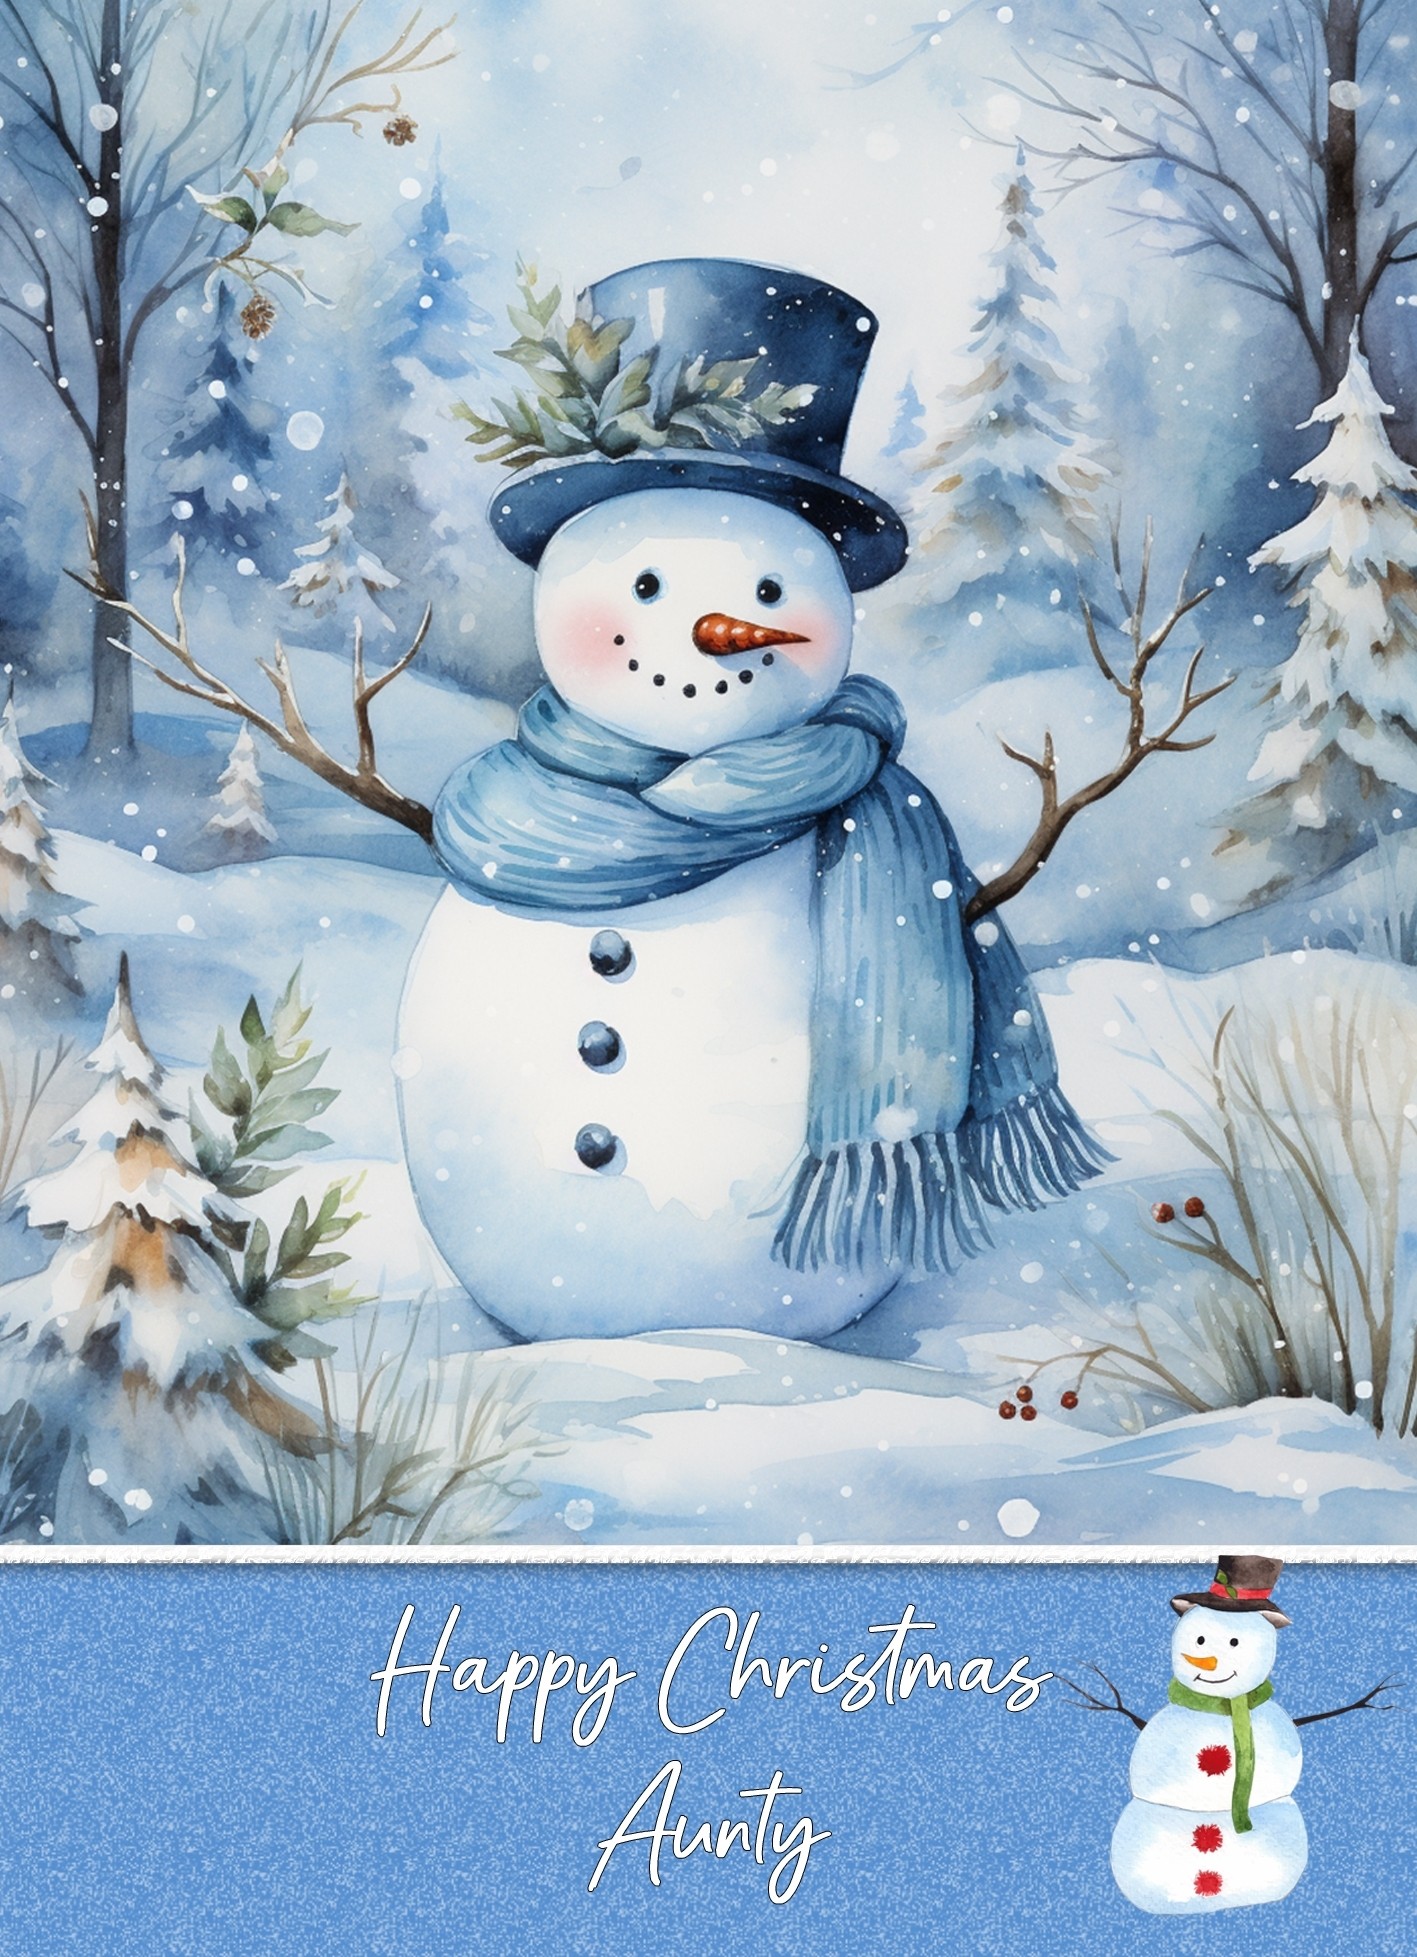 Christmas Card For Aunty (Snowman, Design 8)